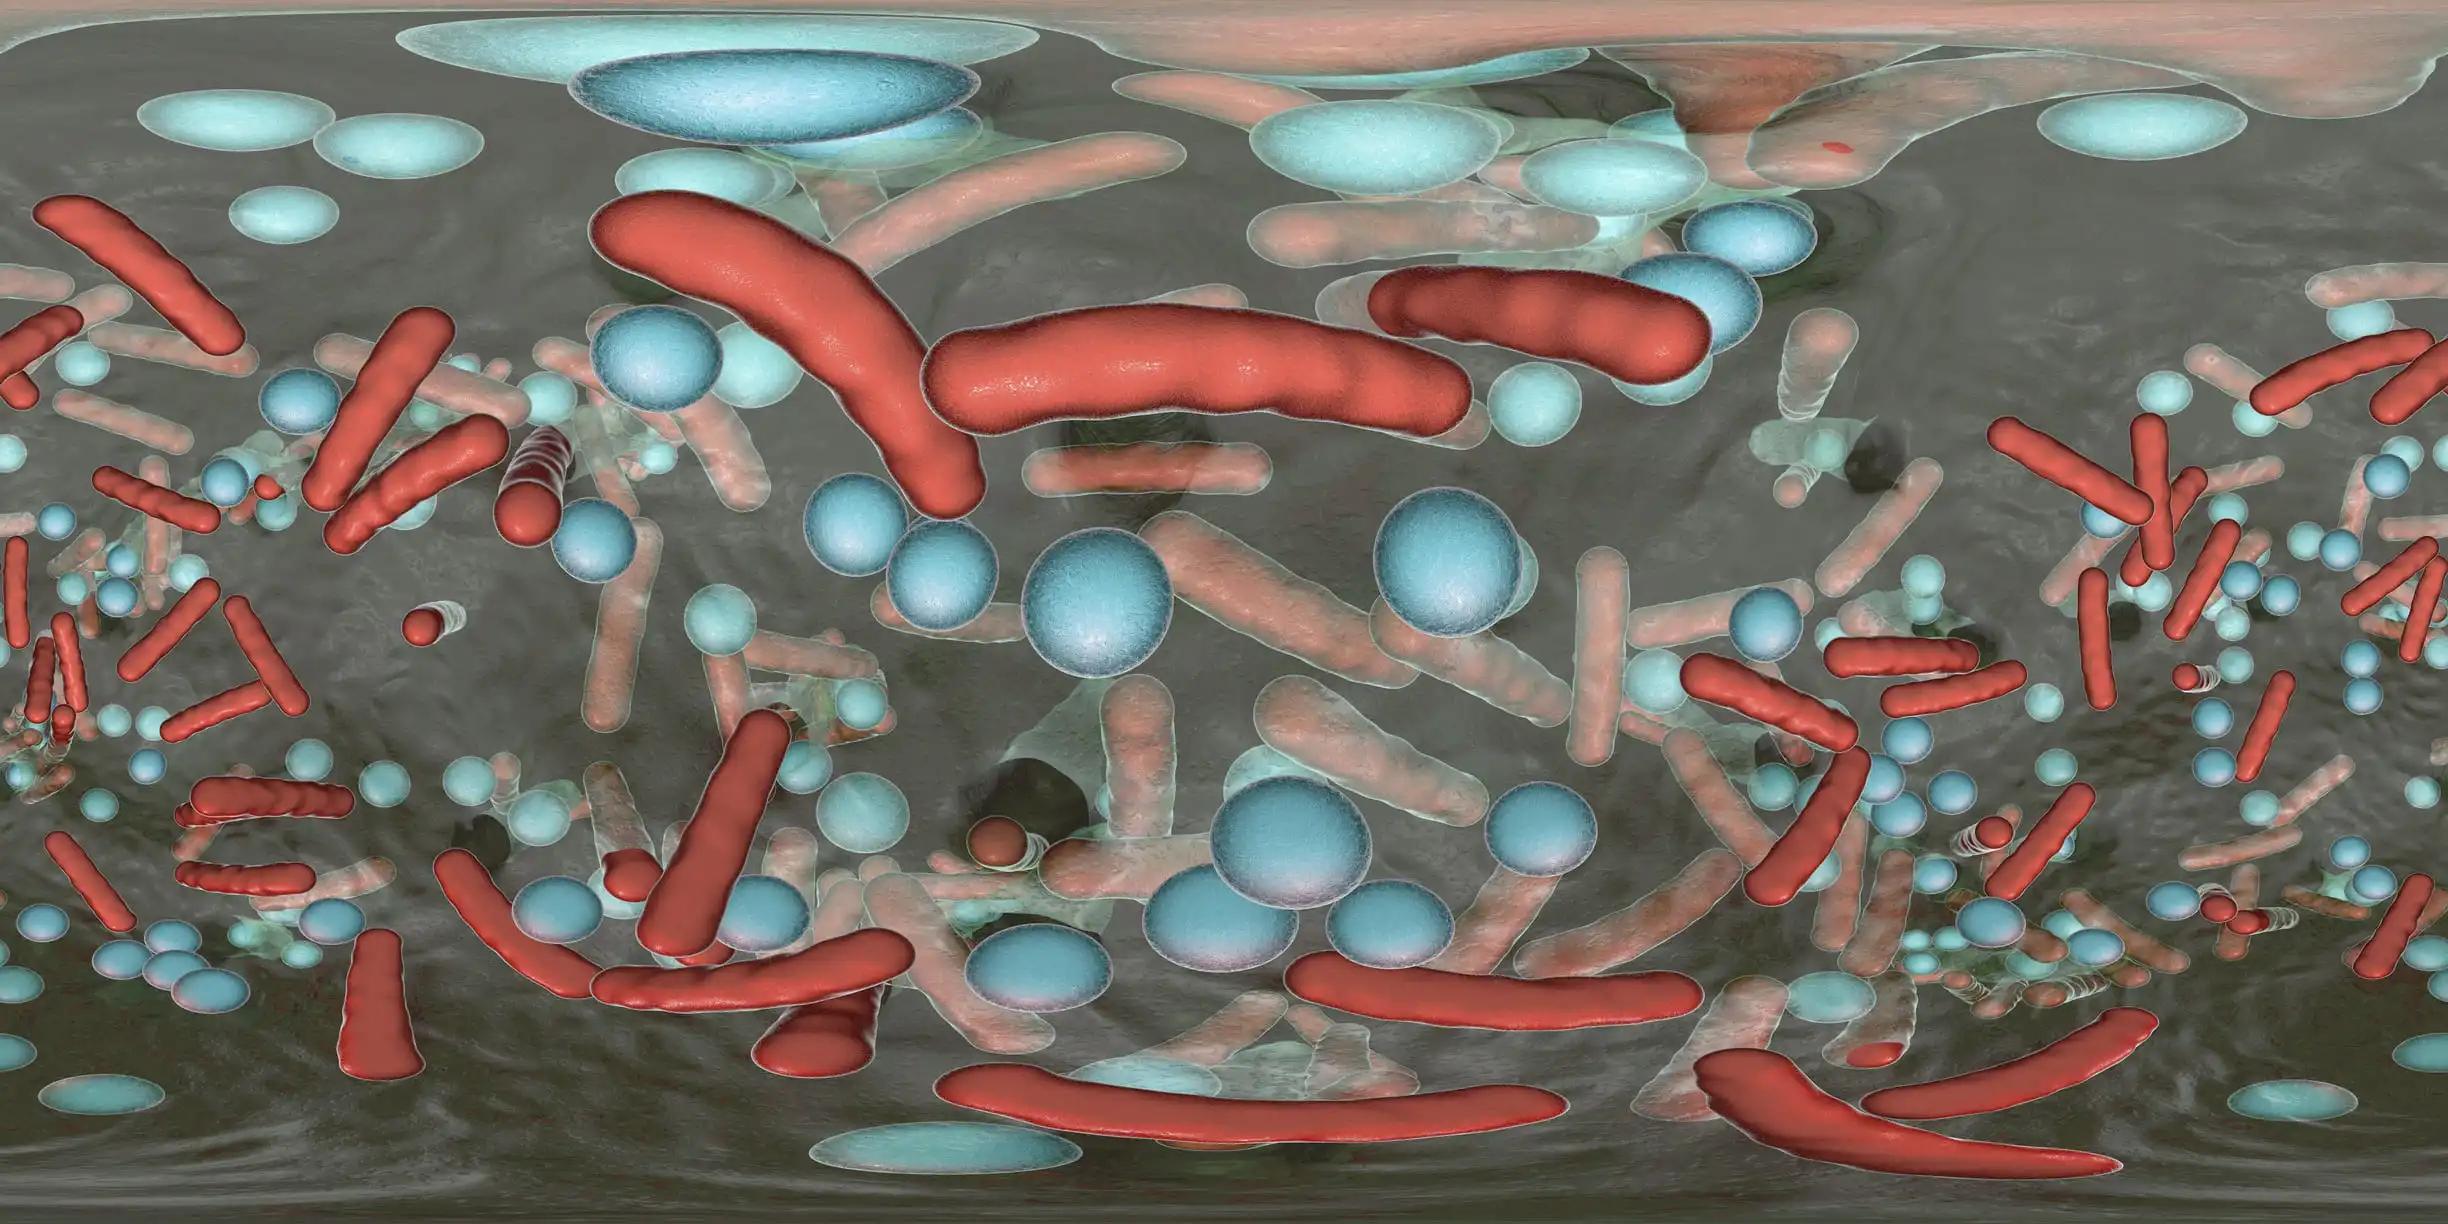 Spherical Panorama of Bacterial Biofilm